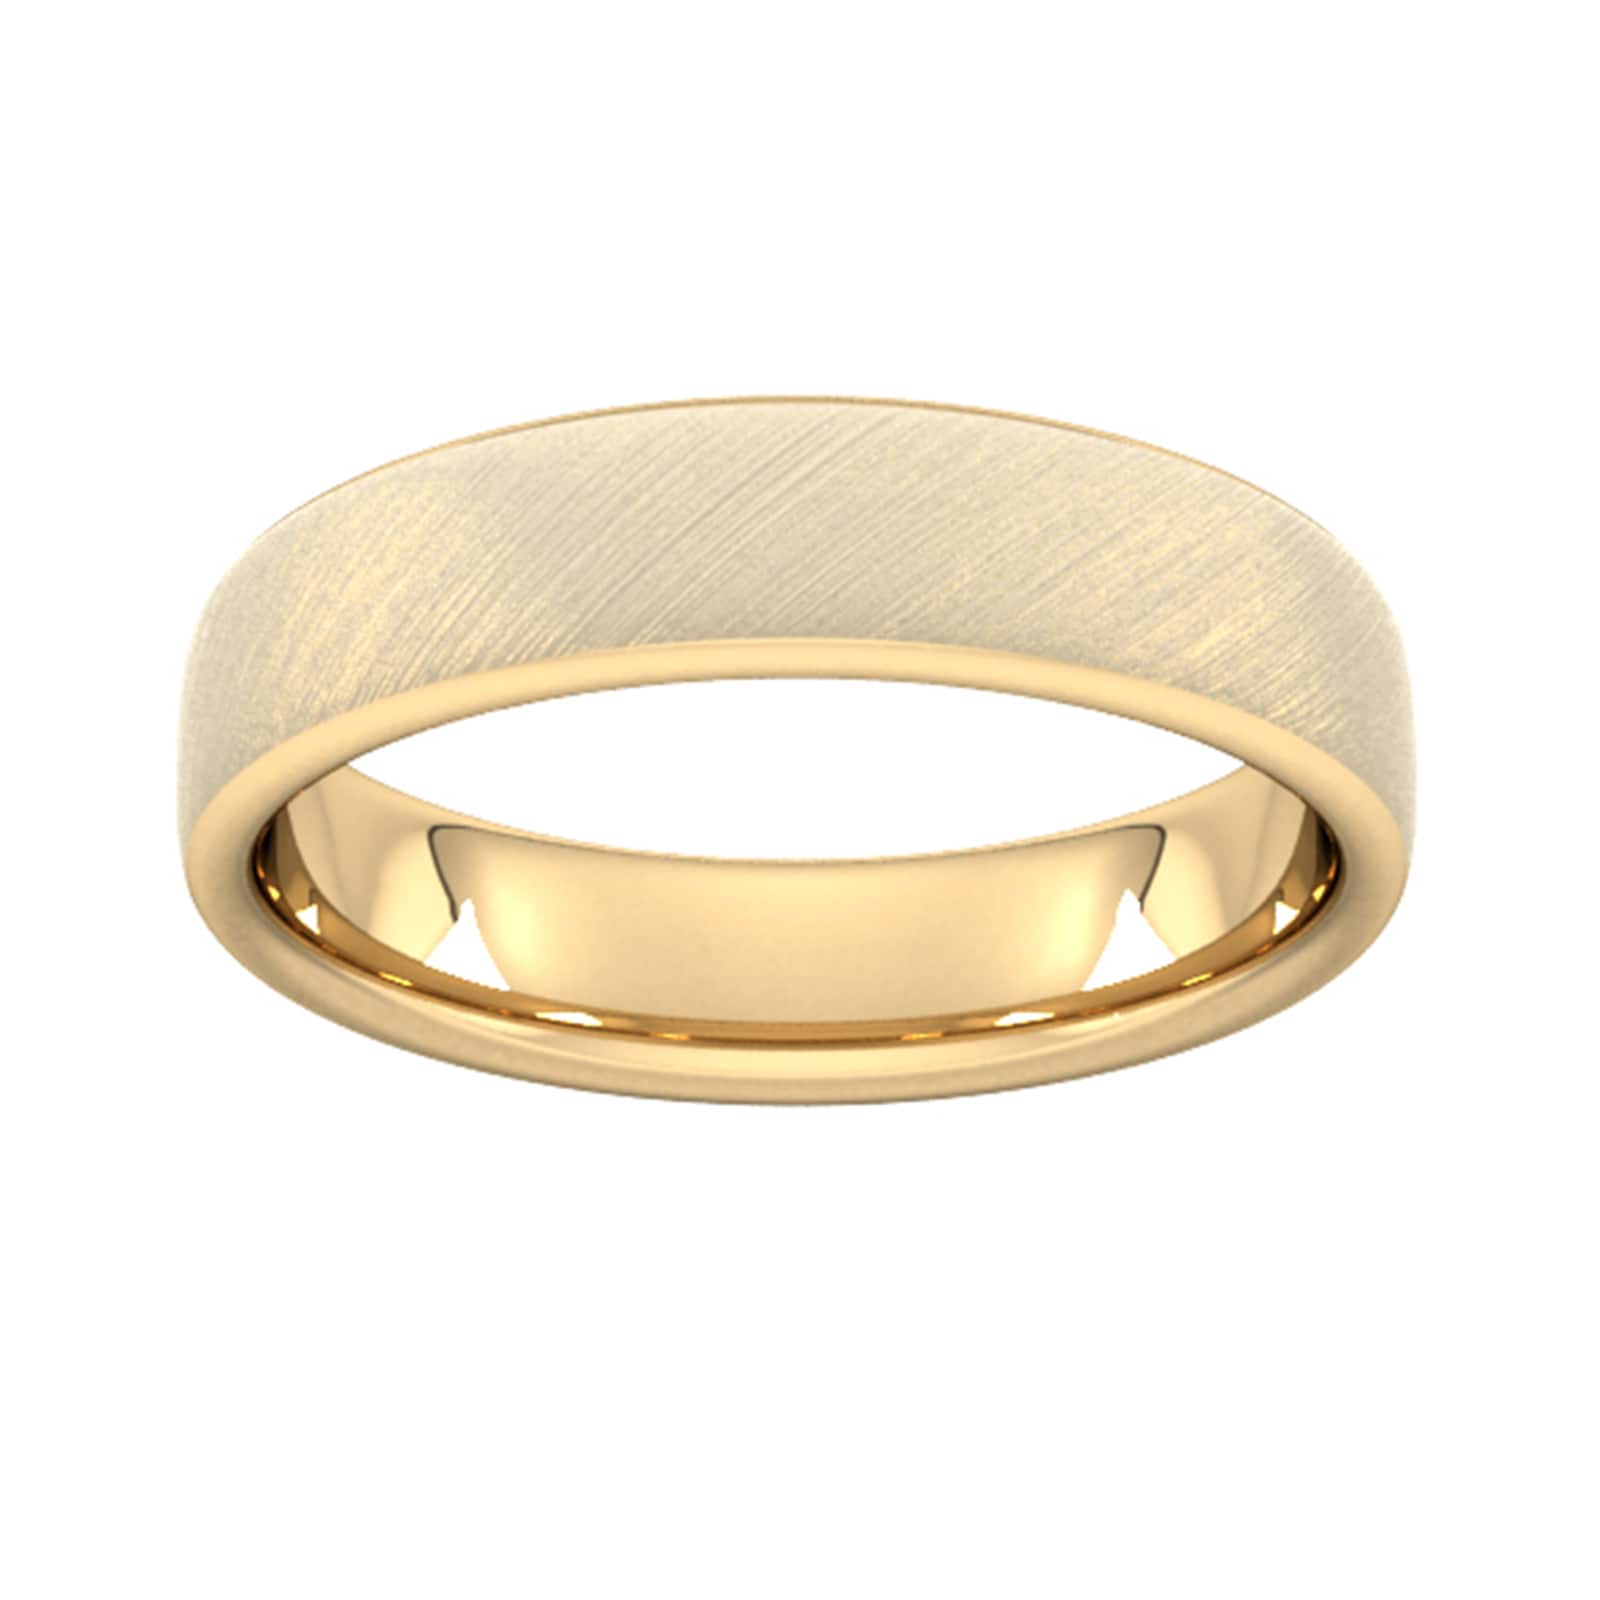 5mm Slight Court Heavy Diagonal Matt Finish Wedding Ring In 9 Carat Yellow Gold - Ring Size Q